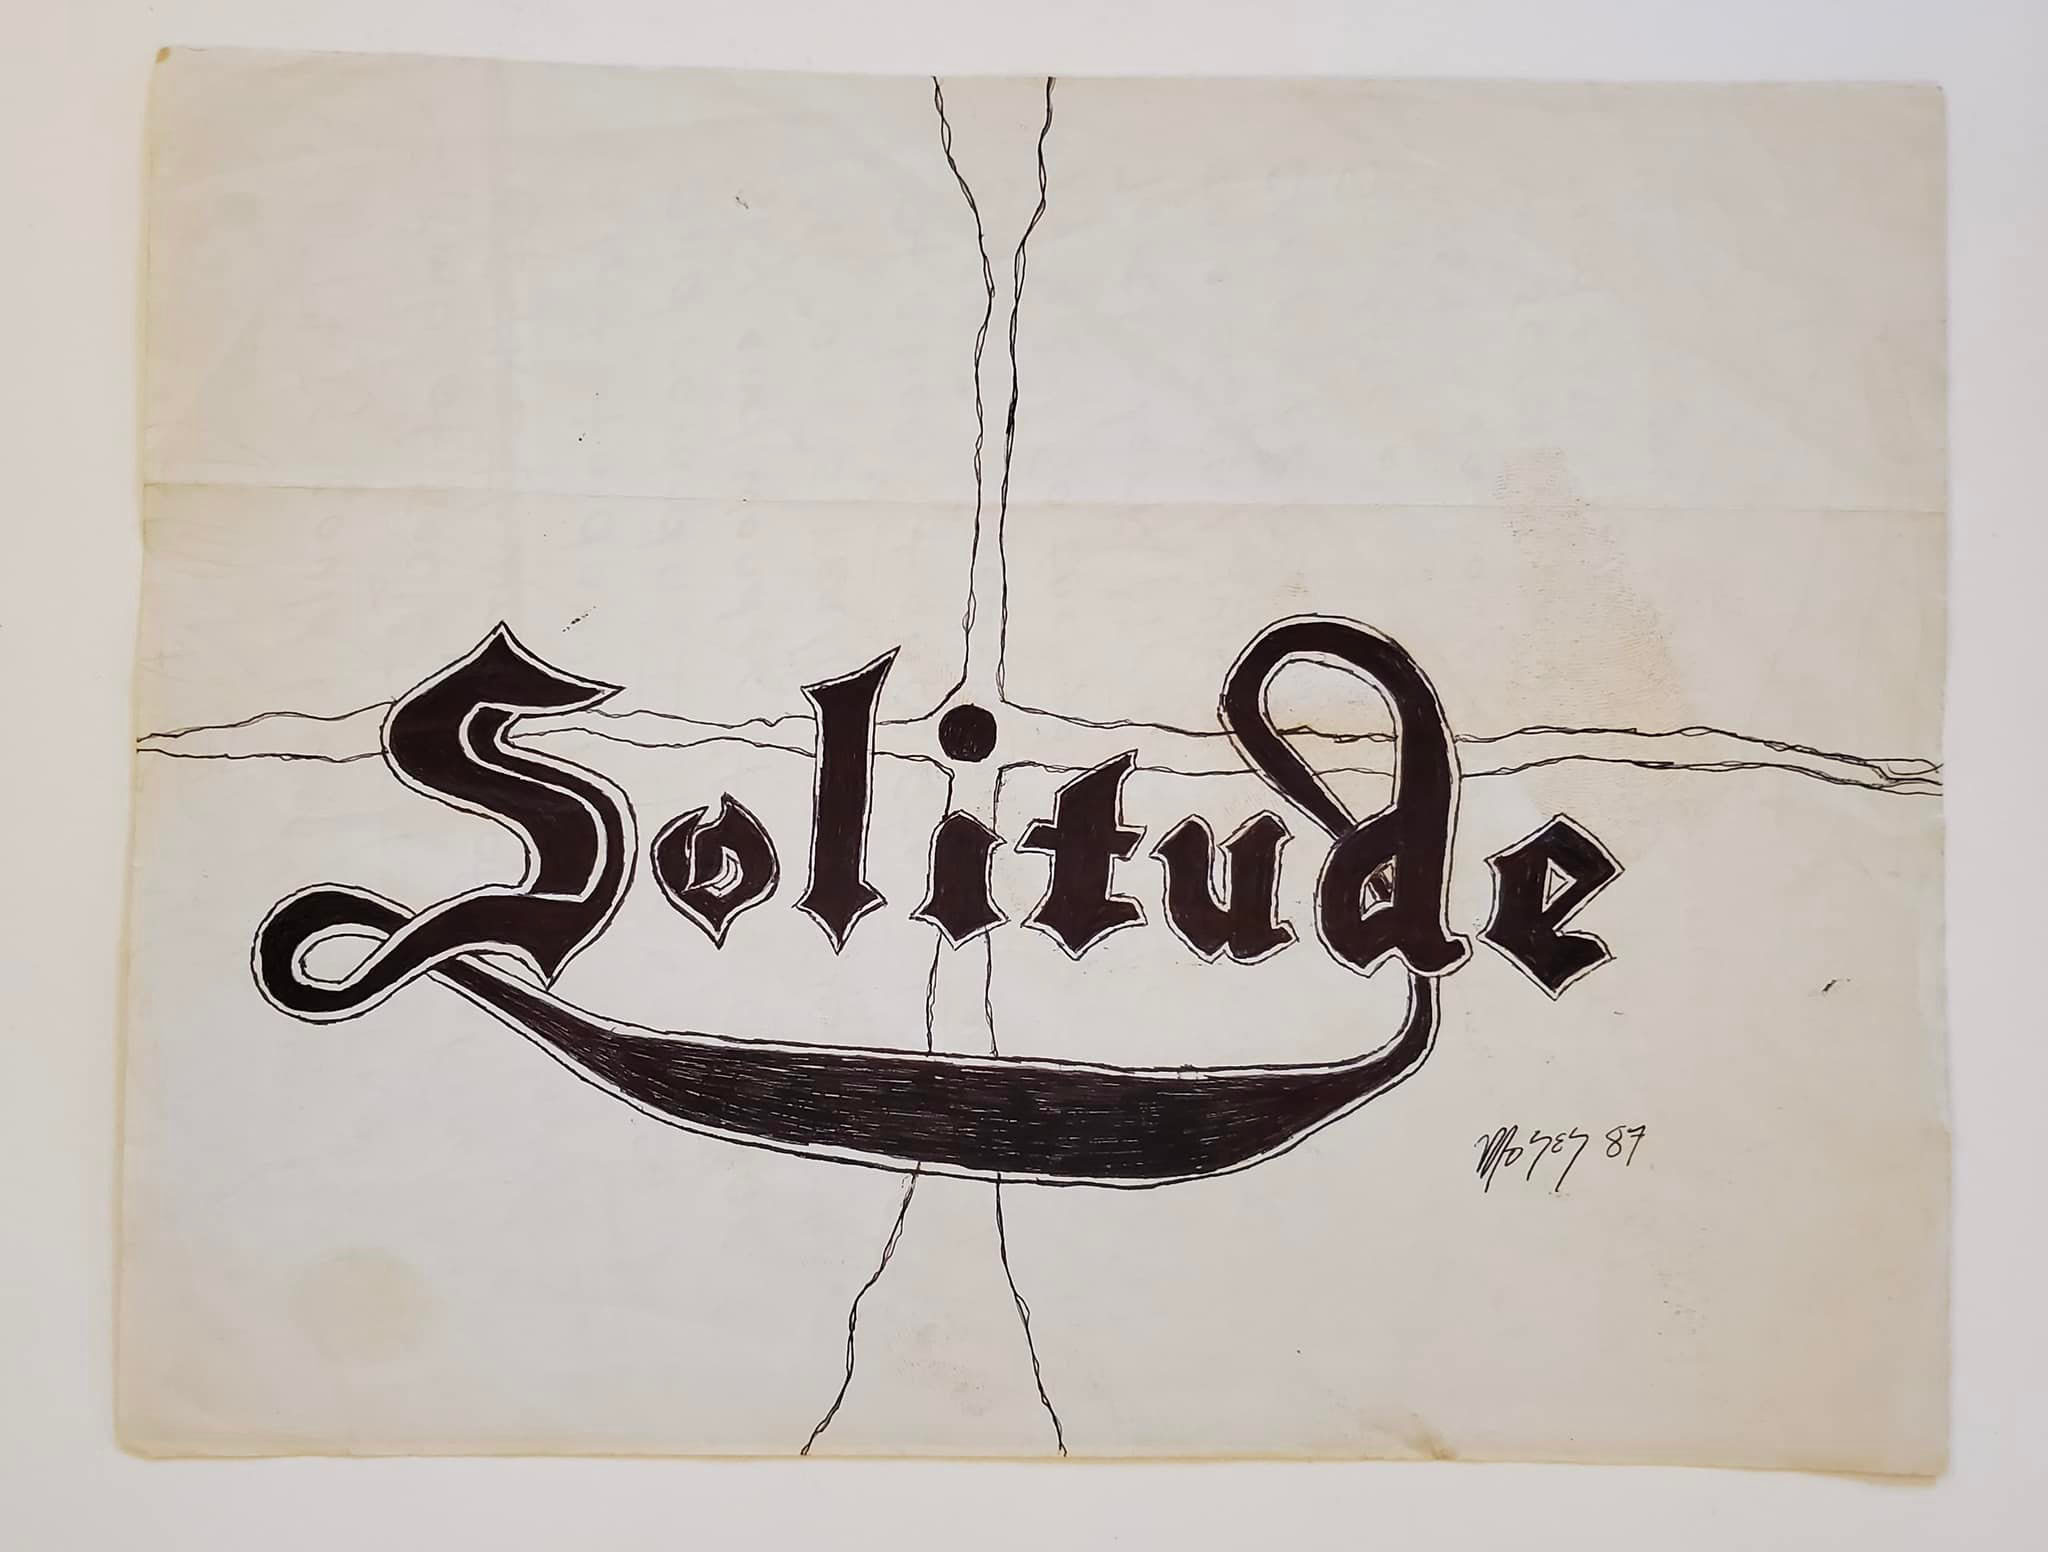 Solitude's Original Logo (1987)